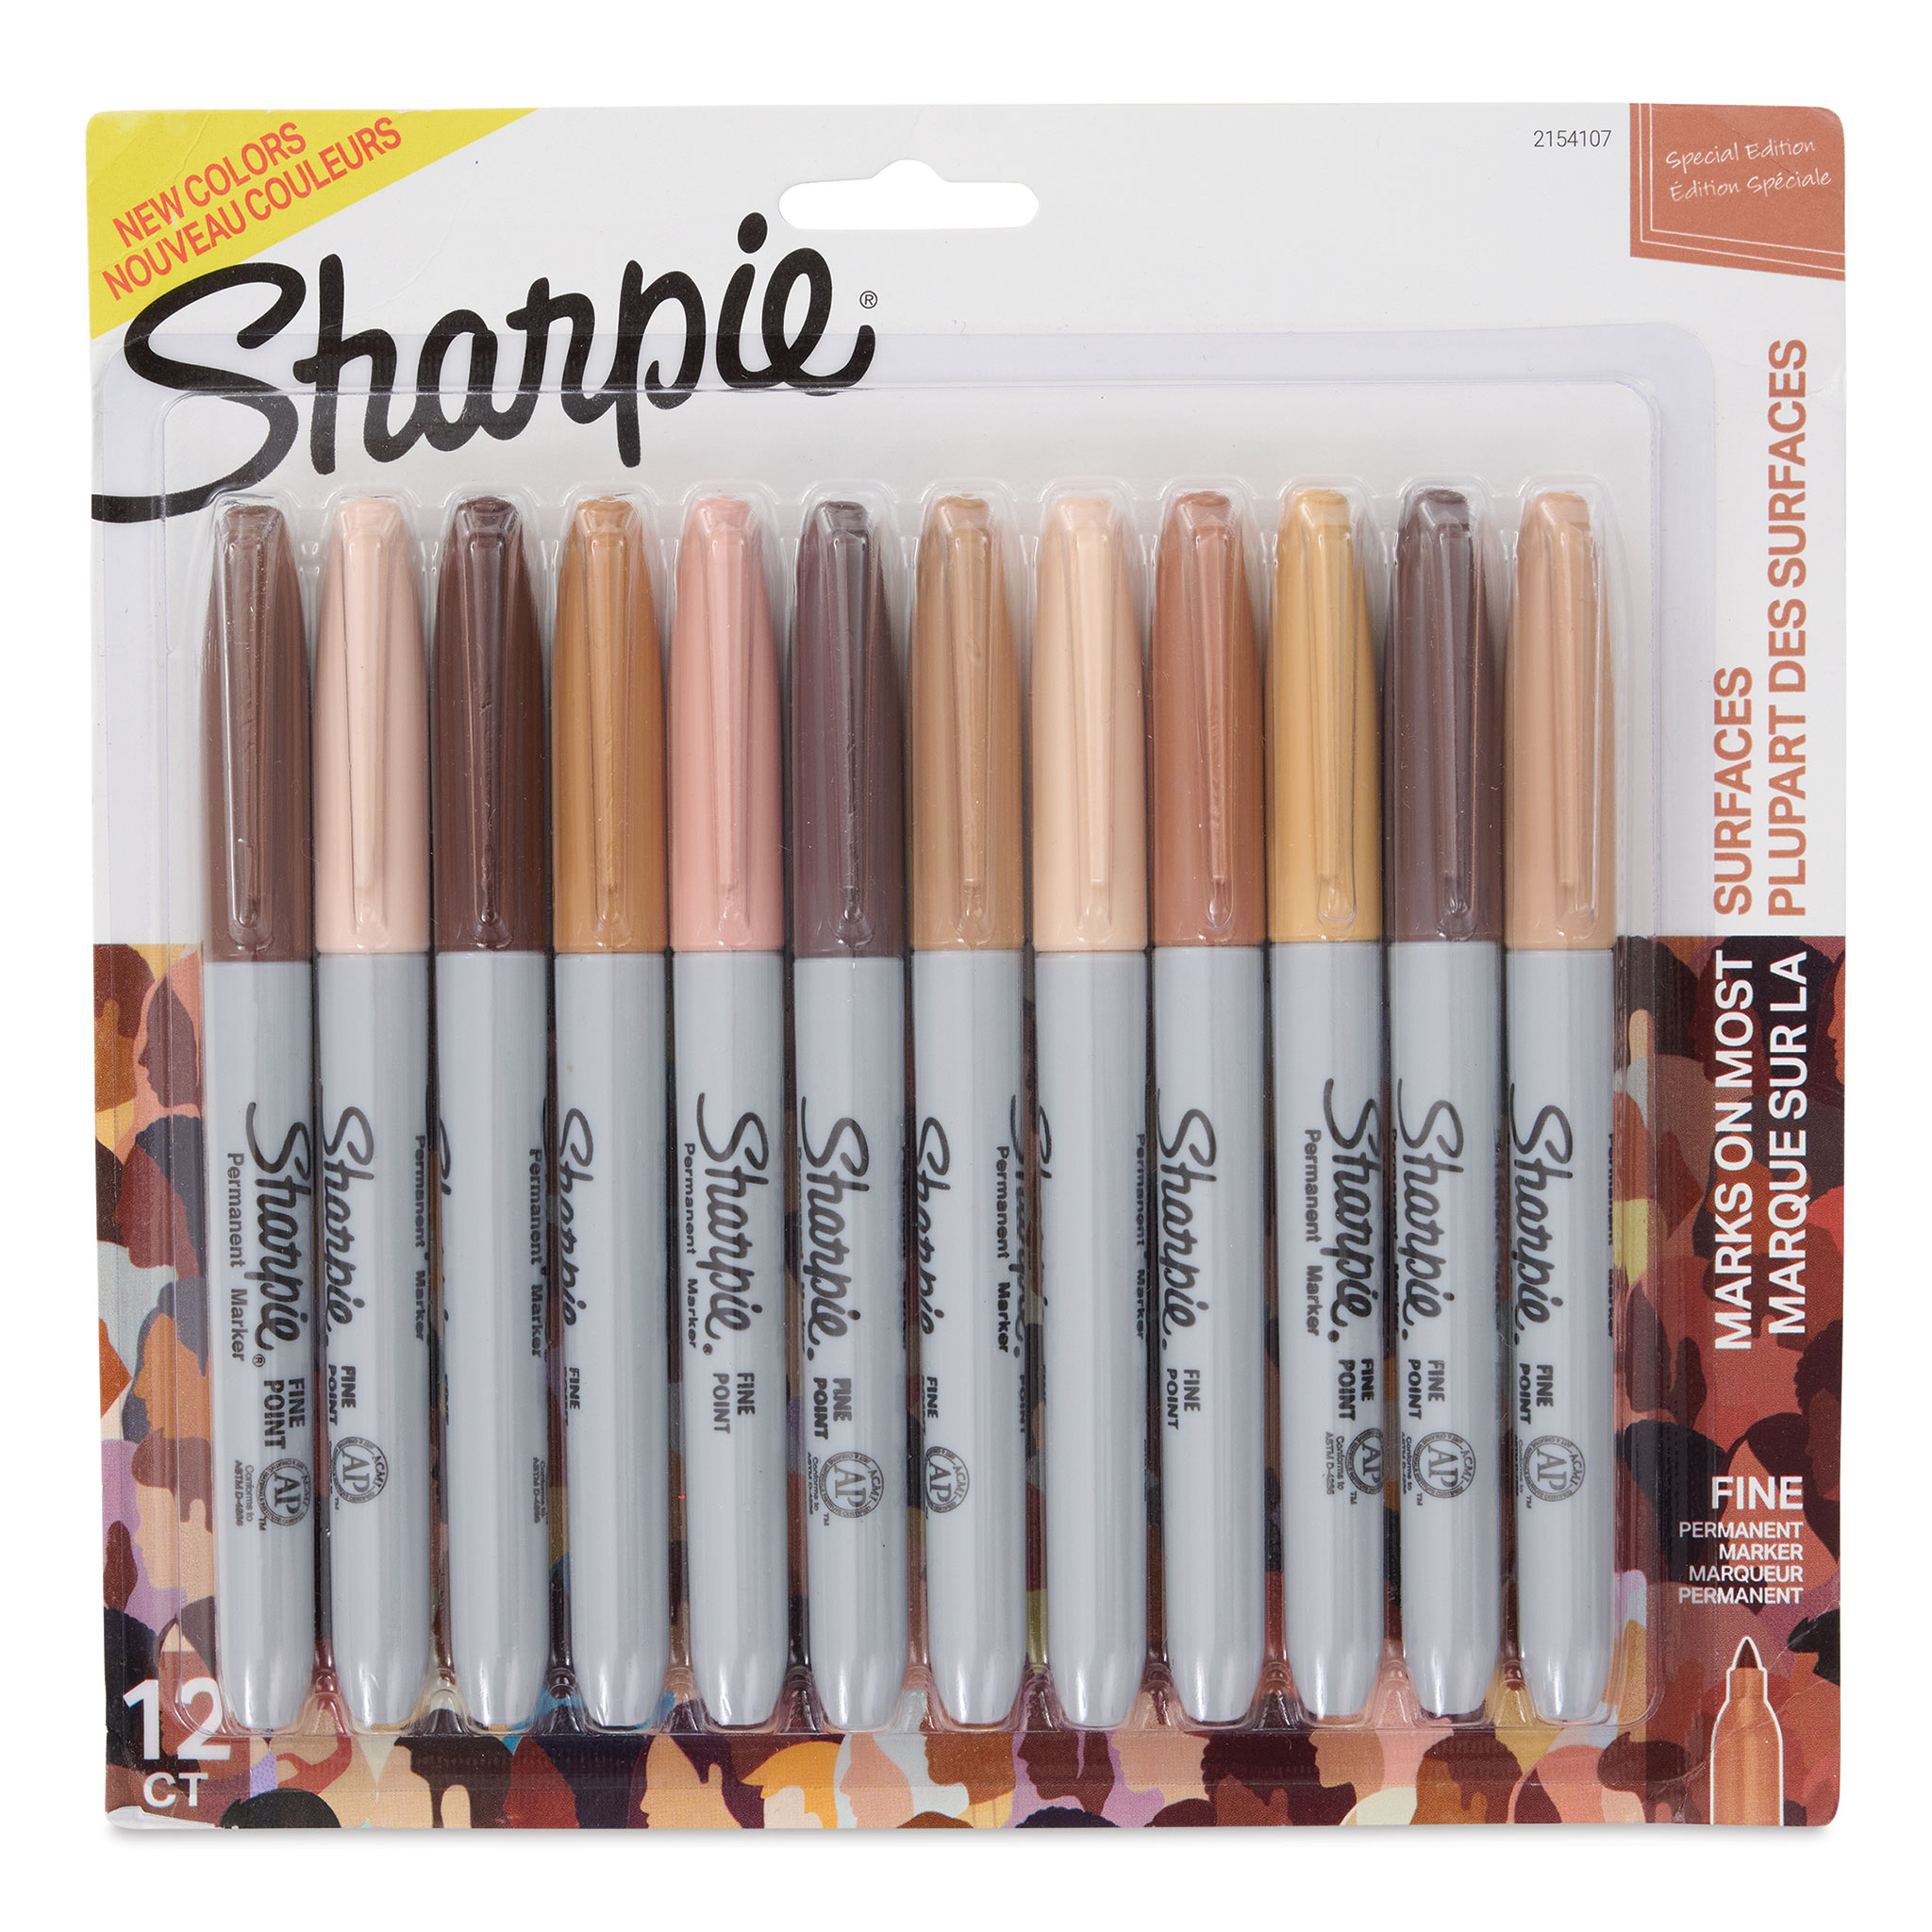 Sharpie Special Edition Portraitt 12 Color Fine Set :: Art Stop